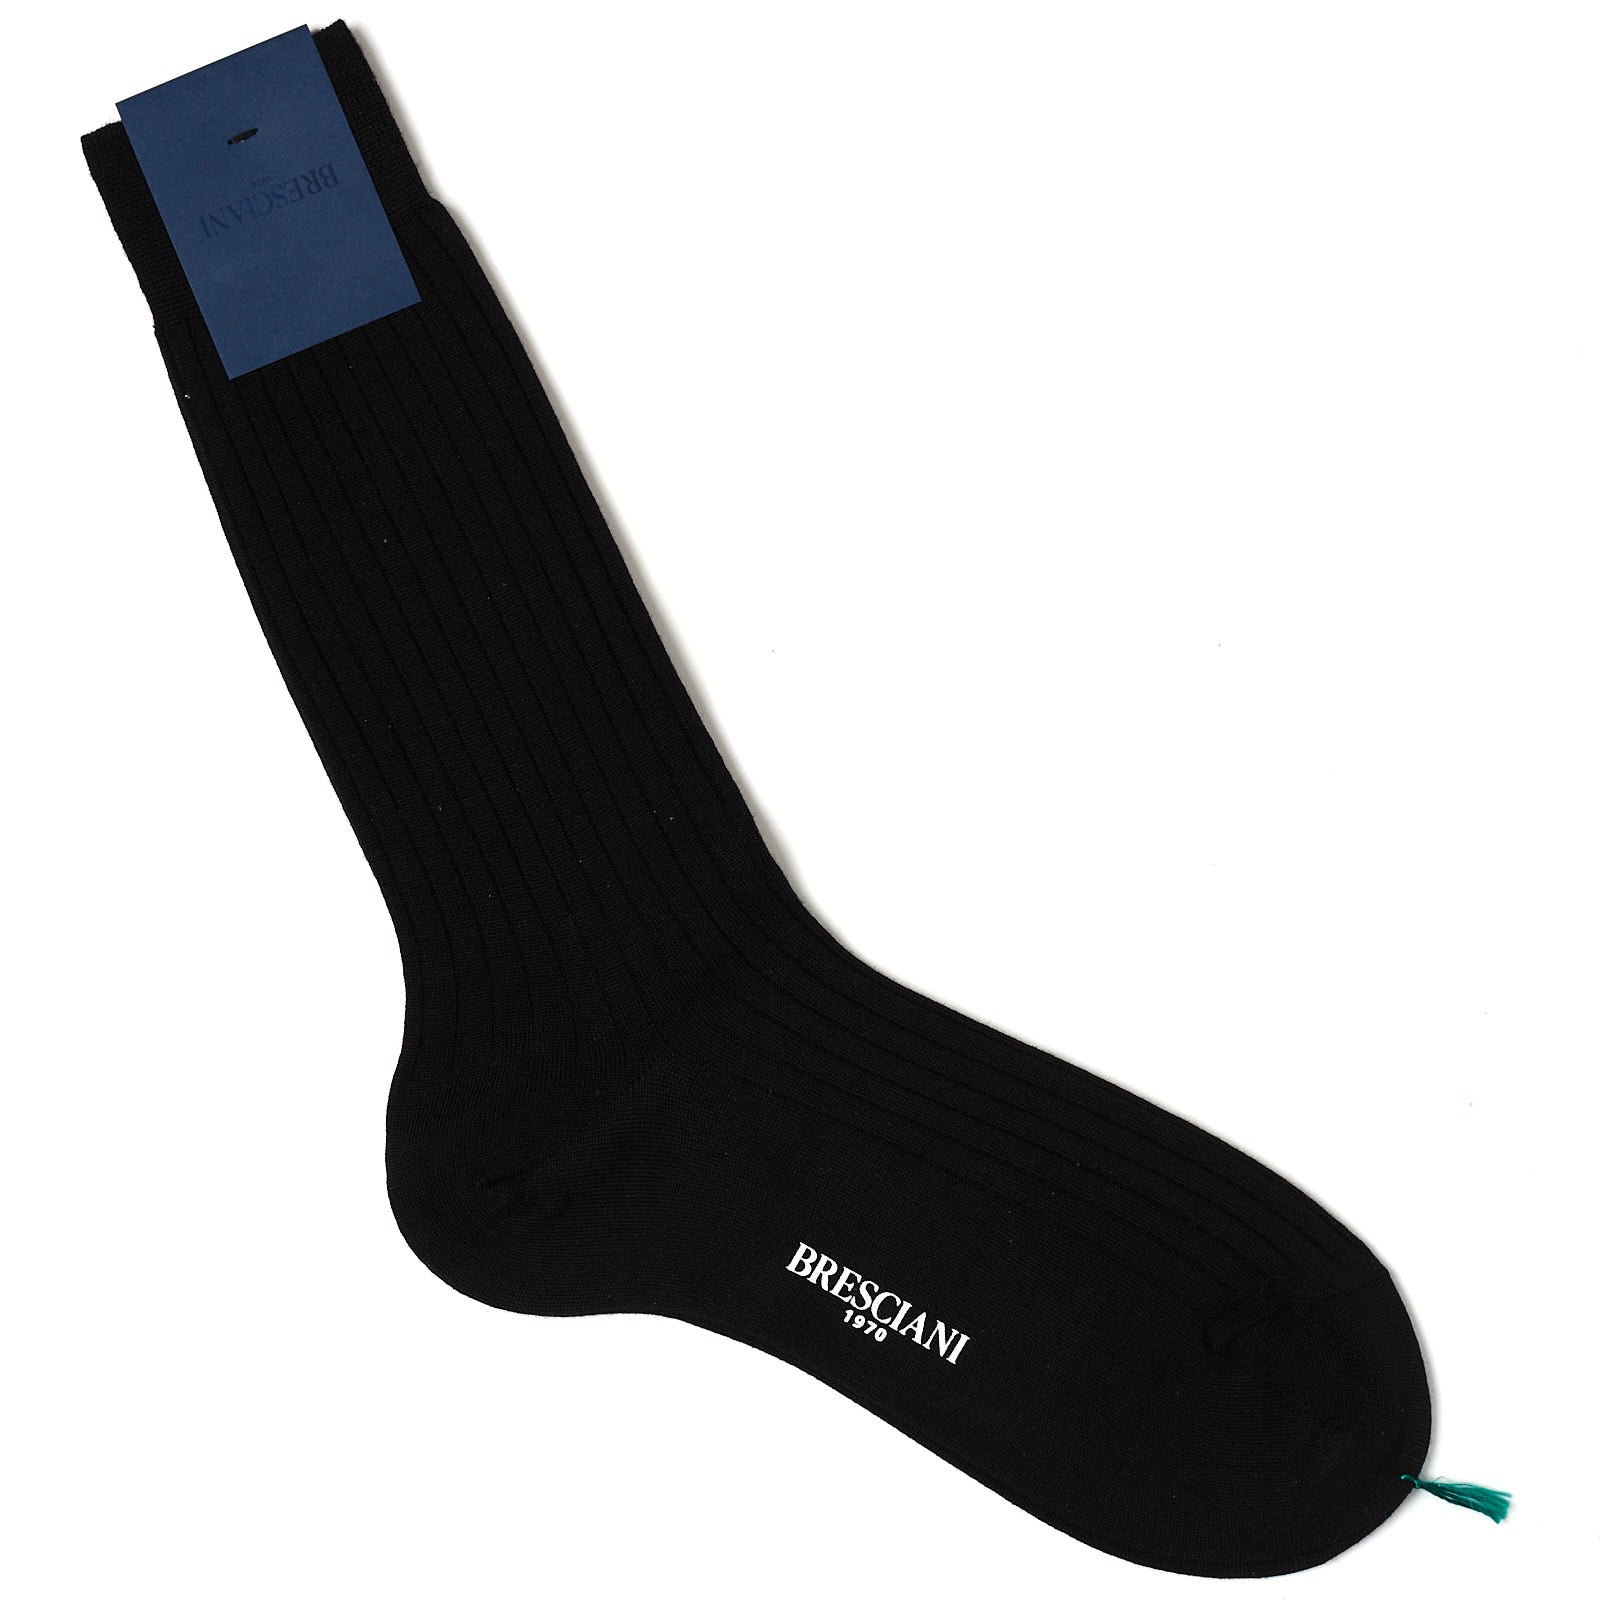 BRESCIANI Extrafine Wool Black Mid Calf Length Socks US M-L BRESCIANI